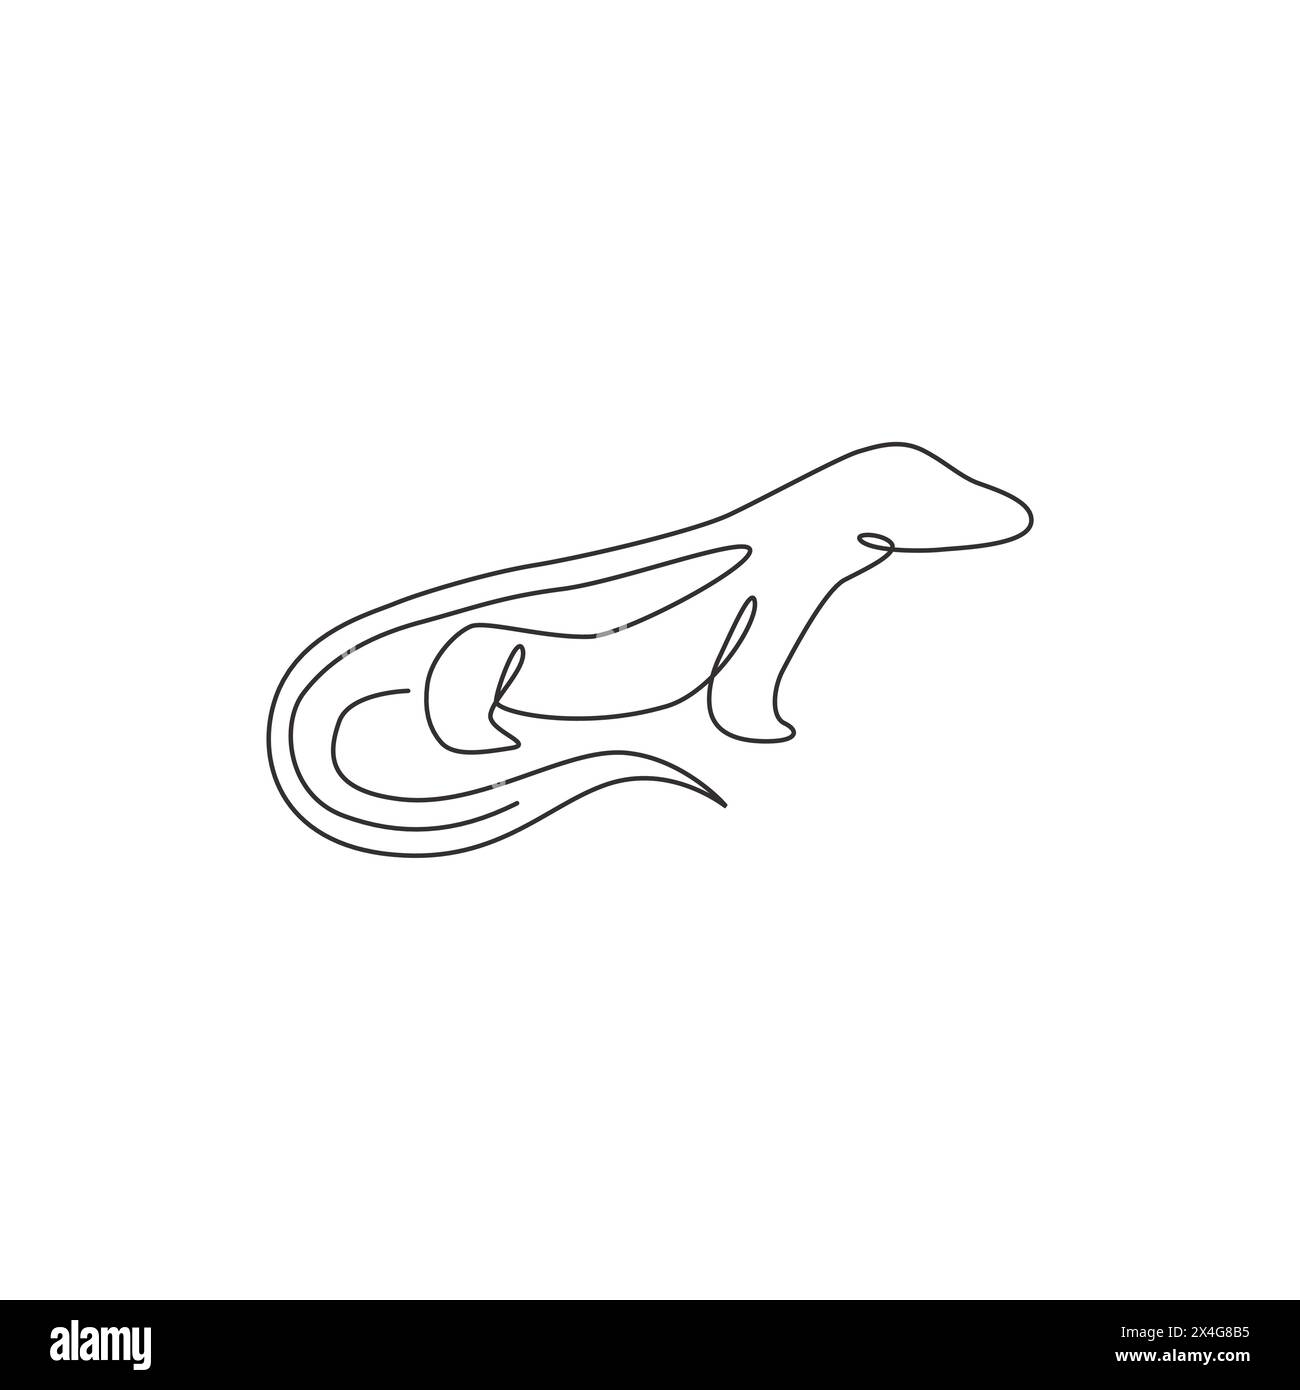 Un disegno continuo del pericoloso drago di komodo per l'identità del logo aziendale. Concetto di mascotte di rettili selvatici protette per la nazione di conservazione Illustrazione Vettoriale